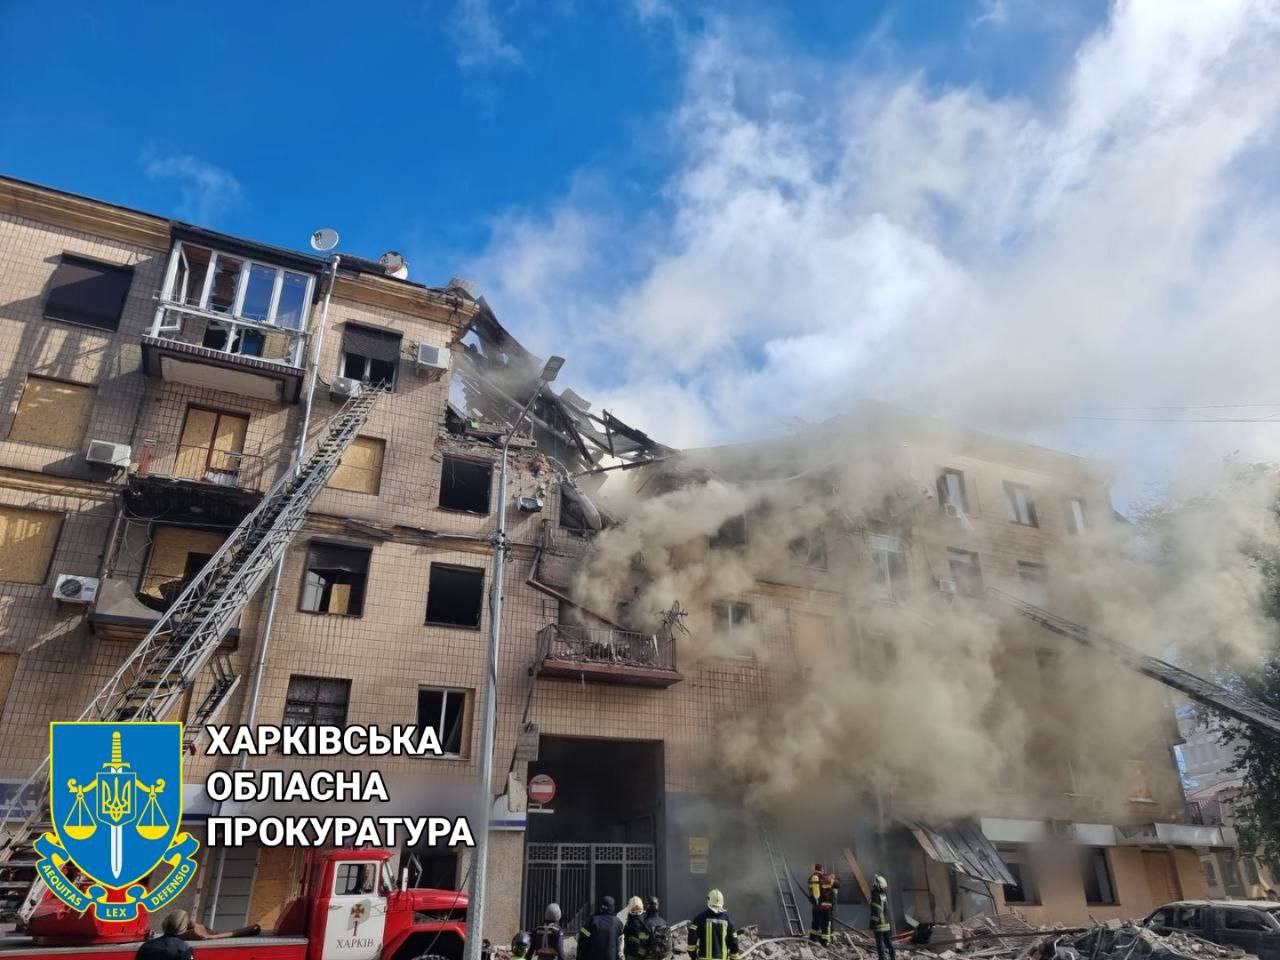 Зруйнований будинок в центрі Харкова, 6 вересня. © Харківська обласна прокуратура